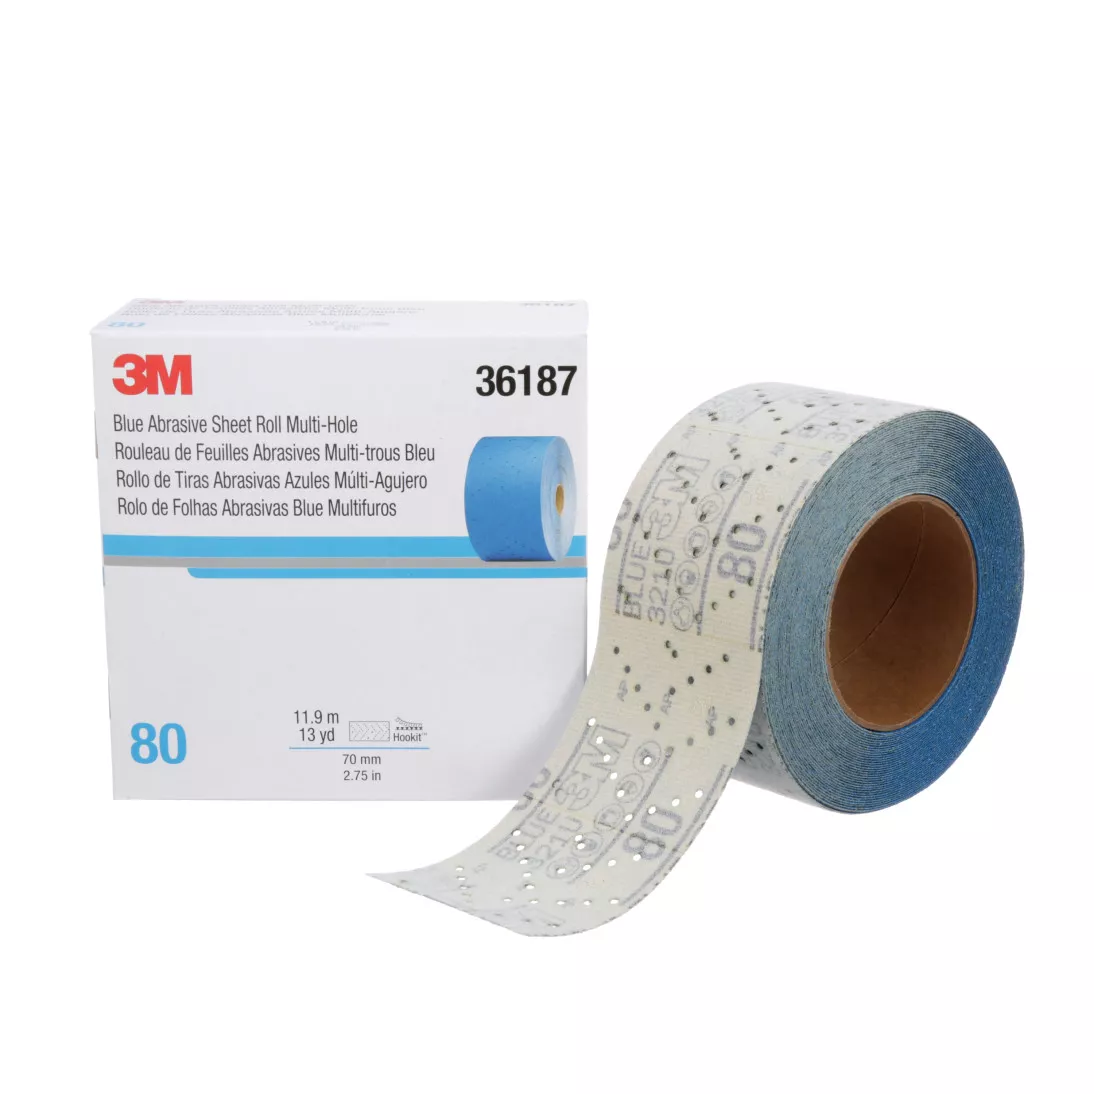 3M™ Hookit™ Blue Abrasive Sheet Roll Multi-hole, 36187, 80, 2.75 in x 13
y, 4 cartons per case